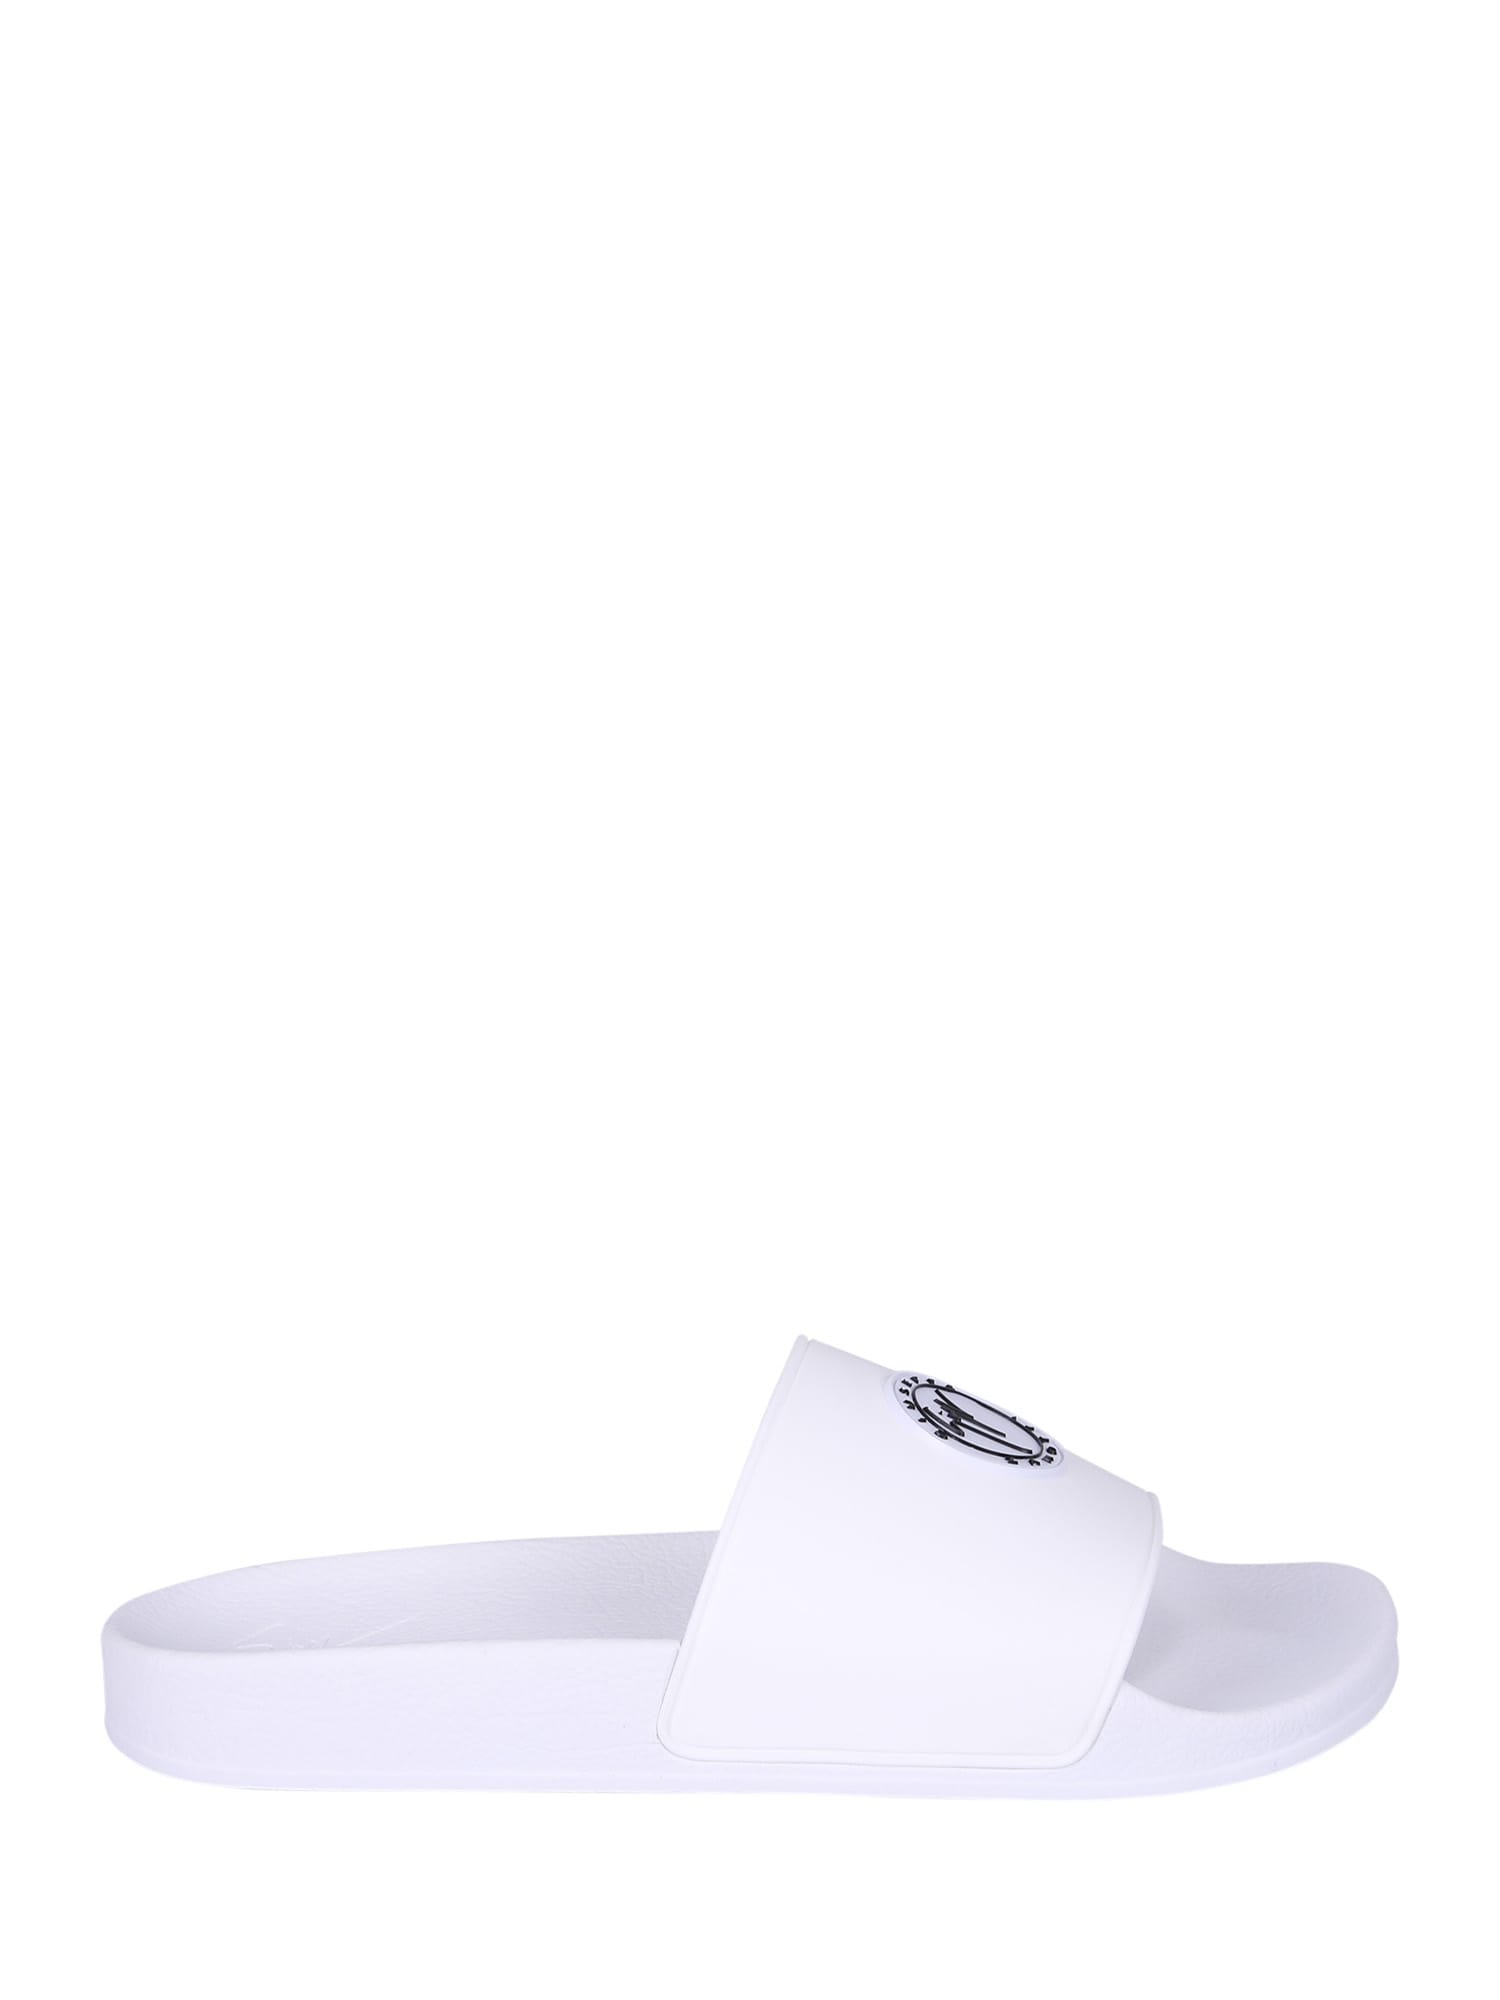 Giuseppe Zanotti Branded Slide Sandals In White